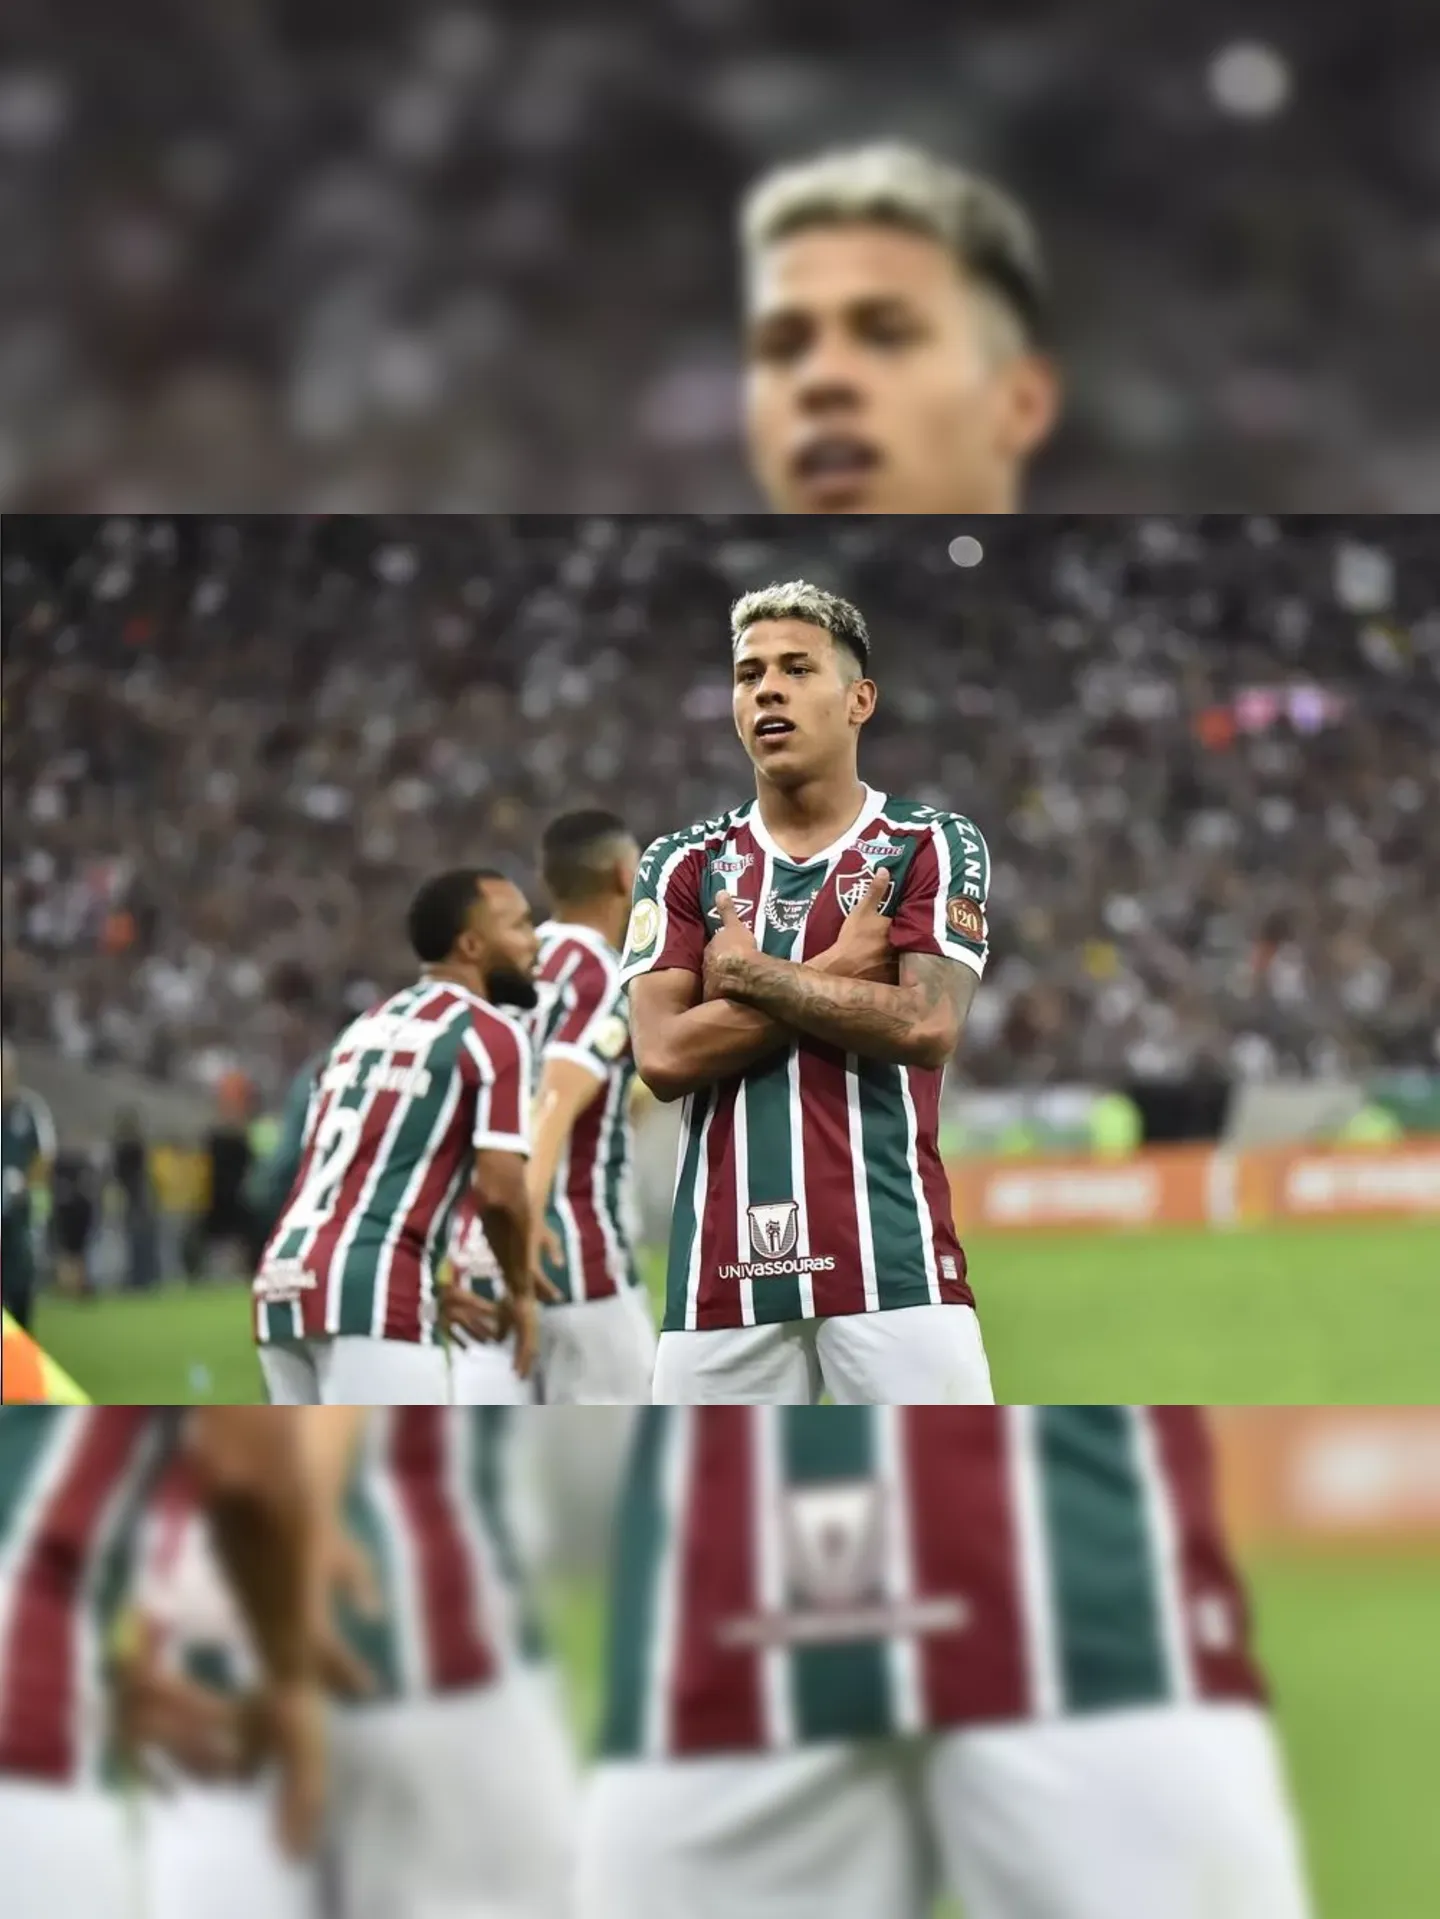 Matheus Martins surgiu como nova jóia após a saída de Luiz Henrique